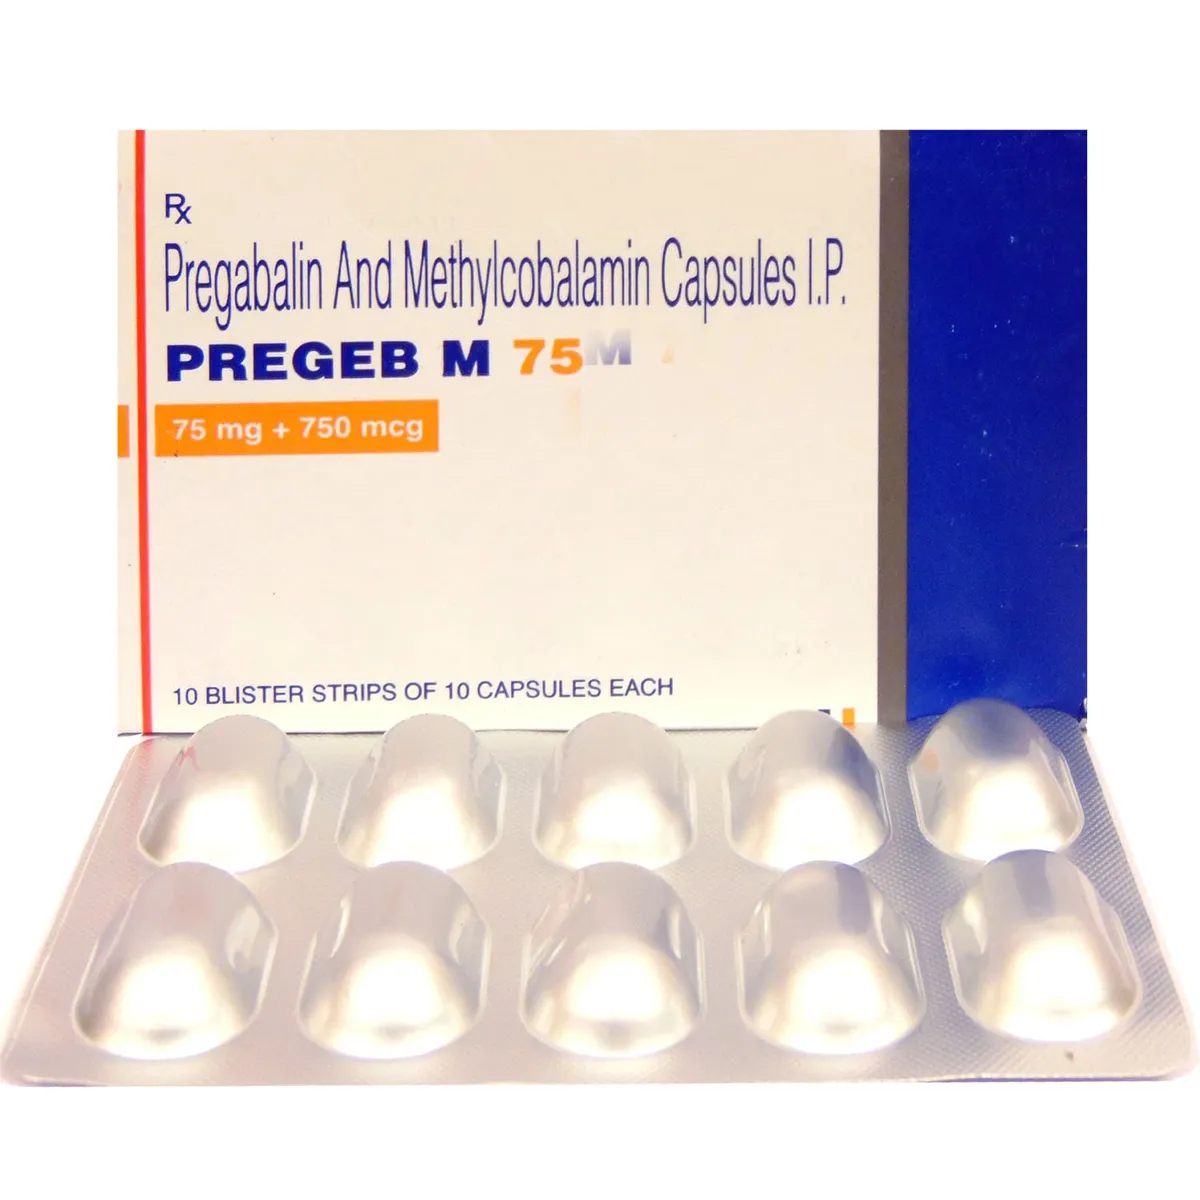 pregeb-m-75-capsule